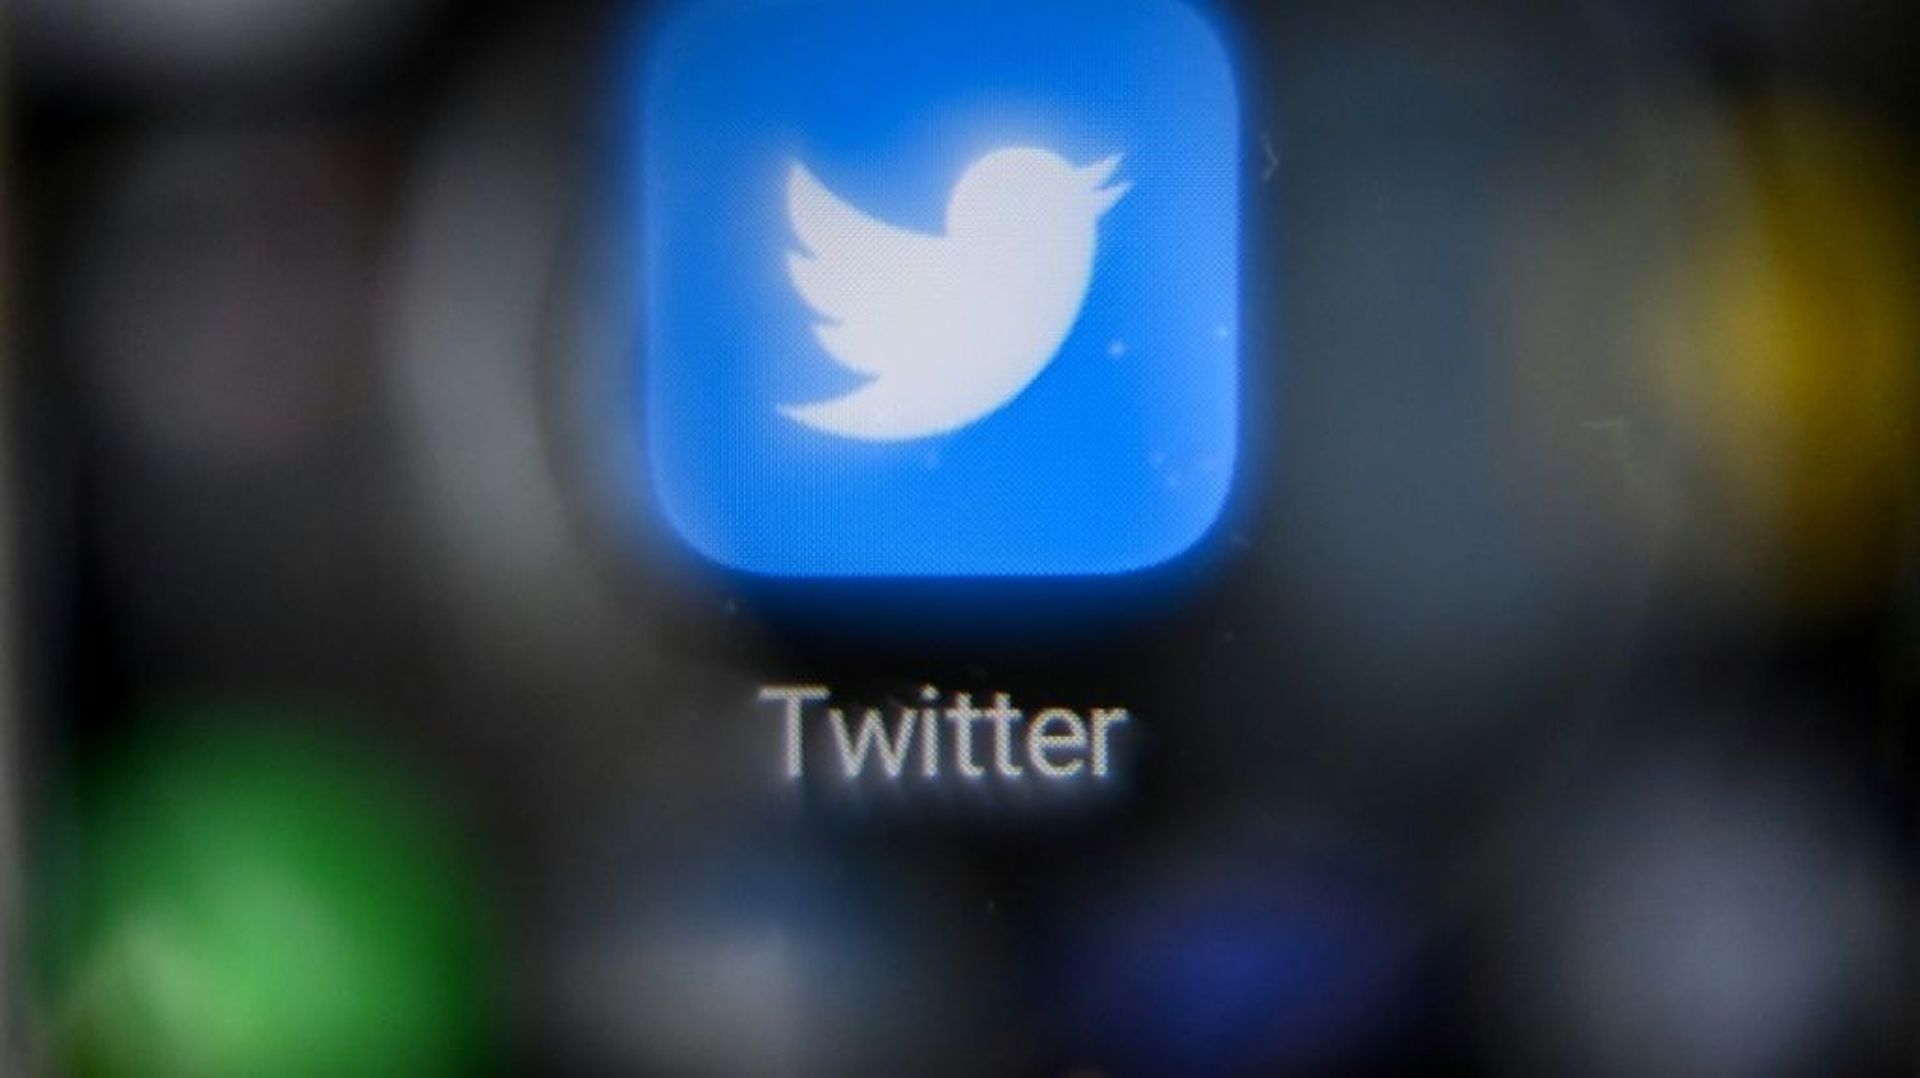 Twitter développe des outils de régulation pour ses utilisateurs, en leur offrant notamment la possibilité de corriger un tweet, au risque de se dénaturer